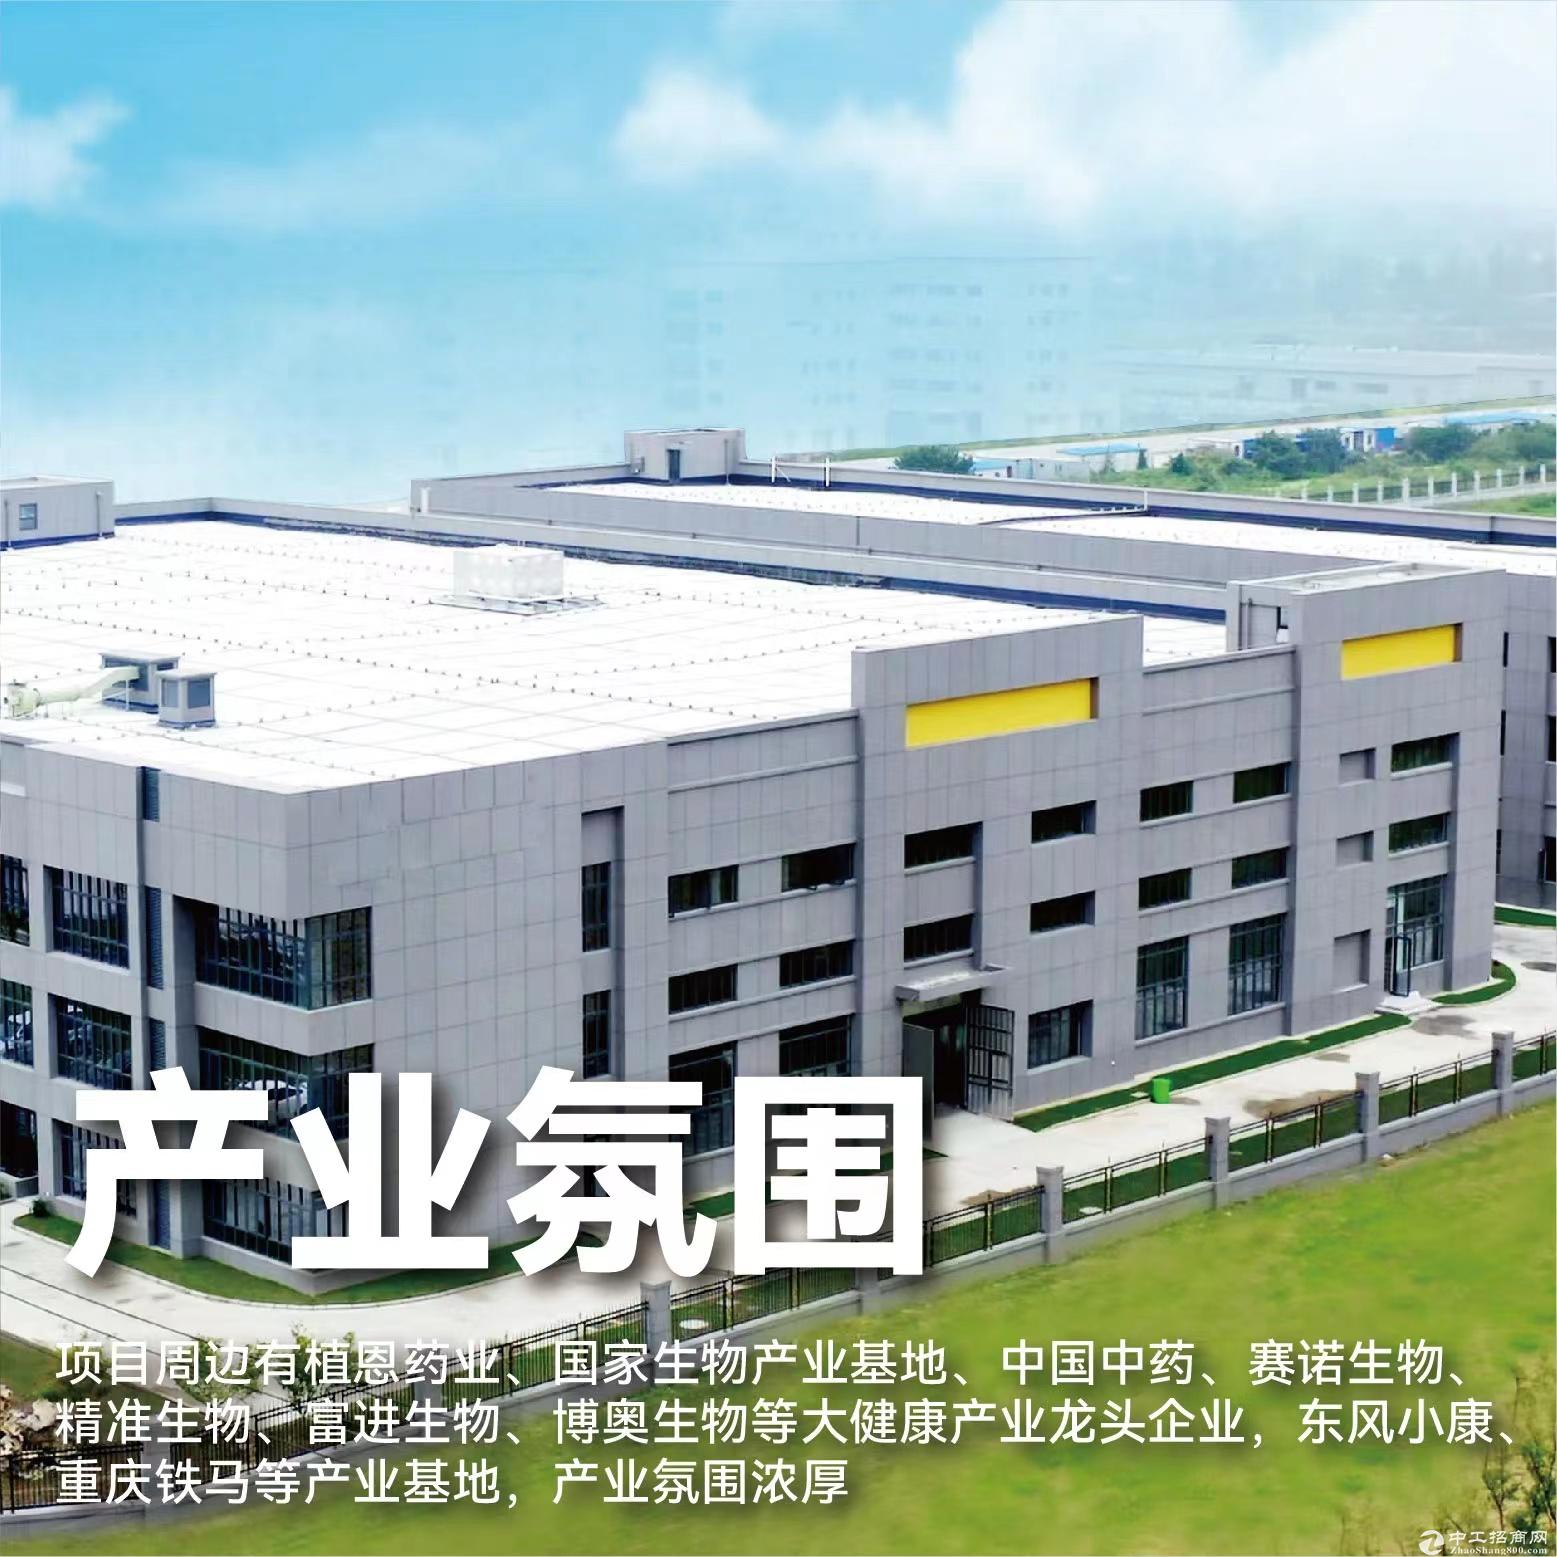 重庆高新区厂房招商—生物医药、医疗器械、智能制造